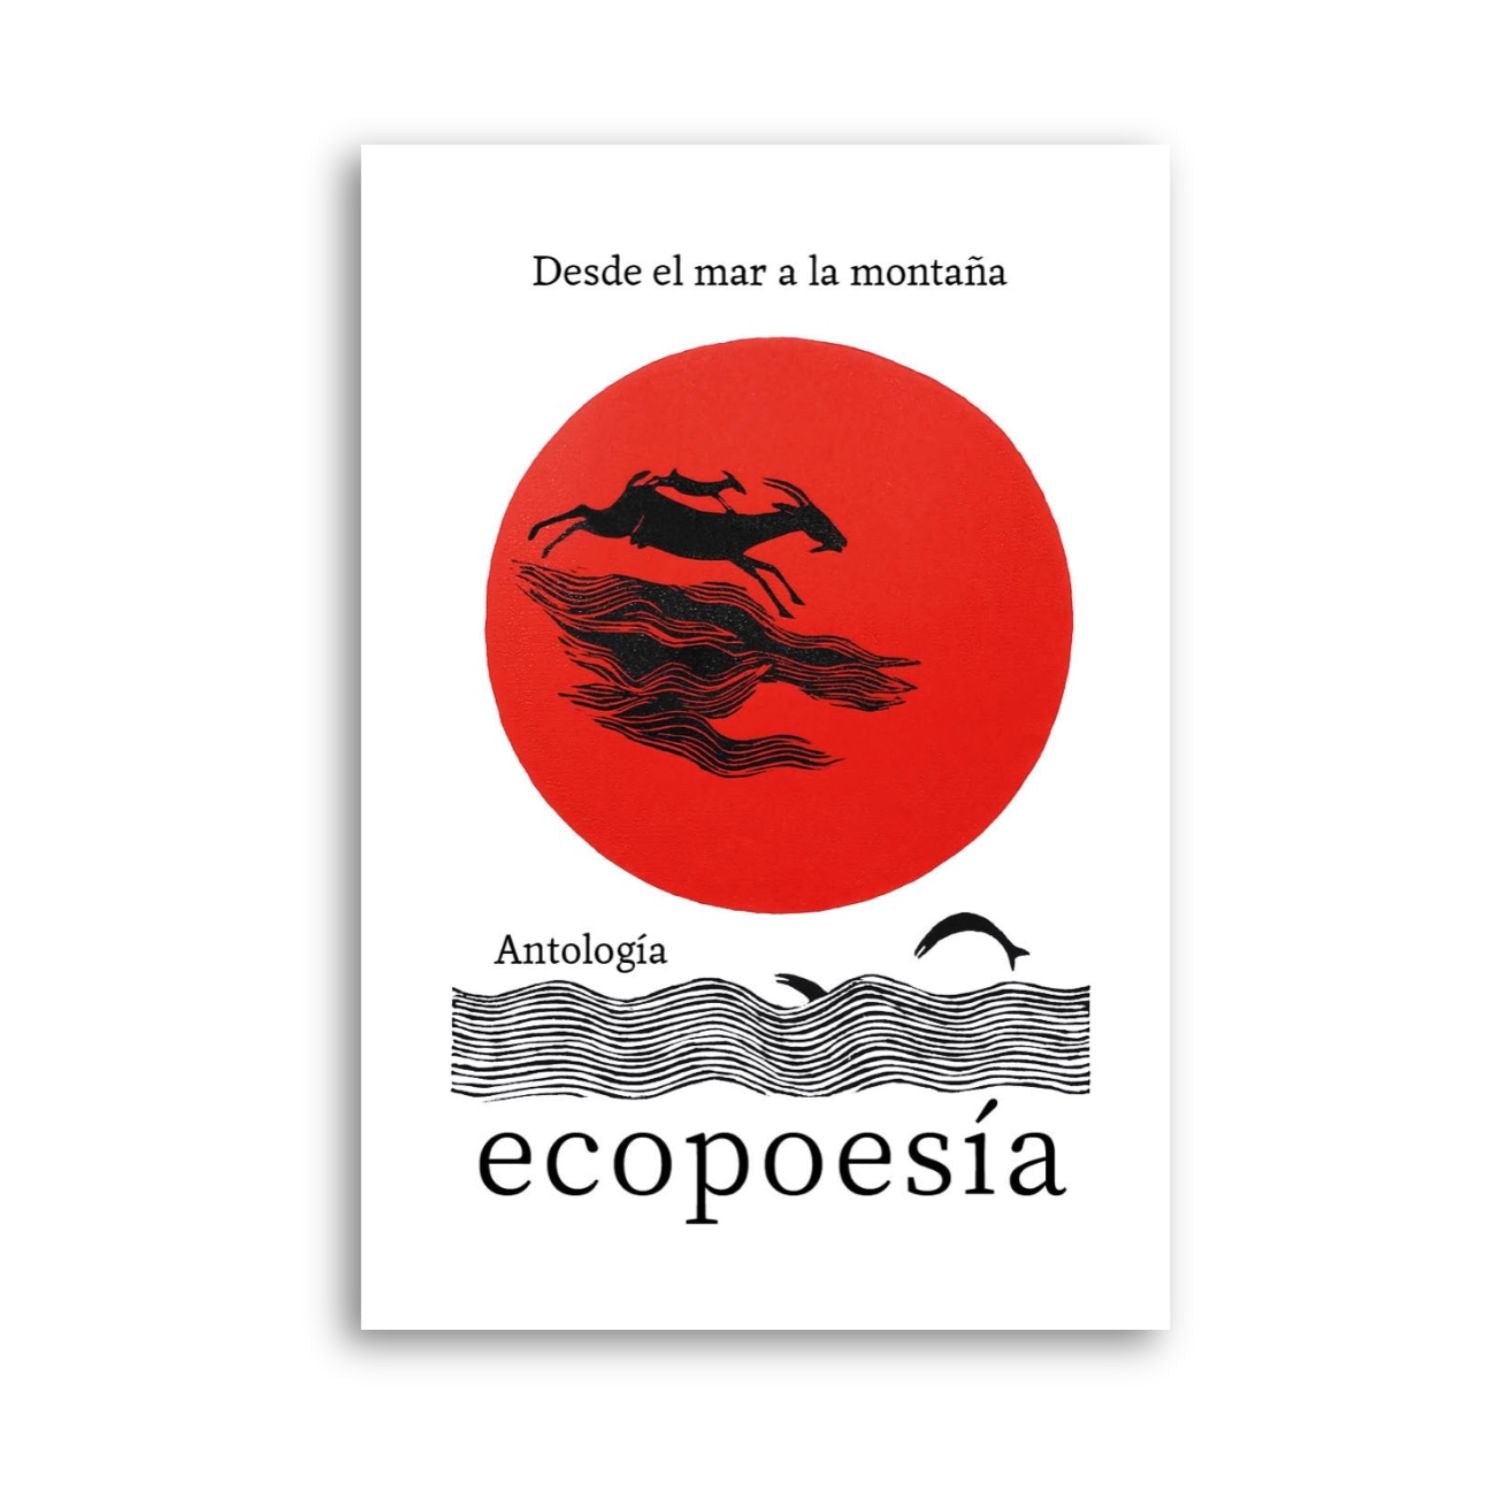 Antología de ecopoesía "Desde el mar a la montaña"